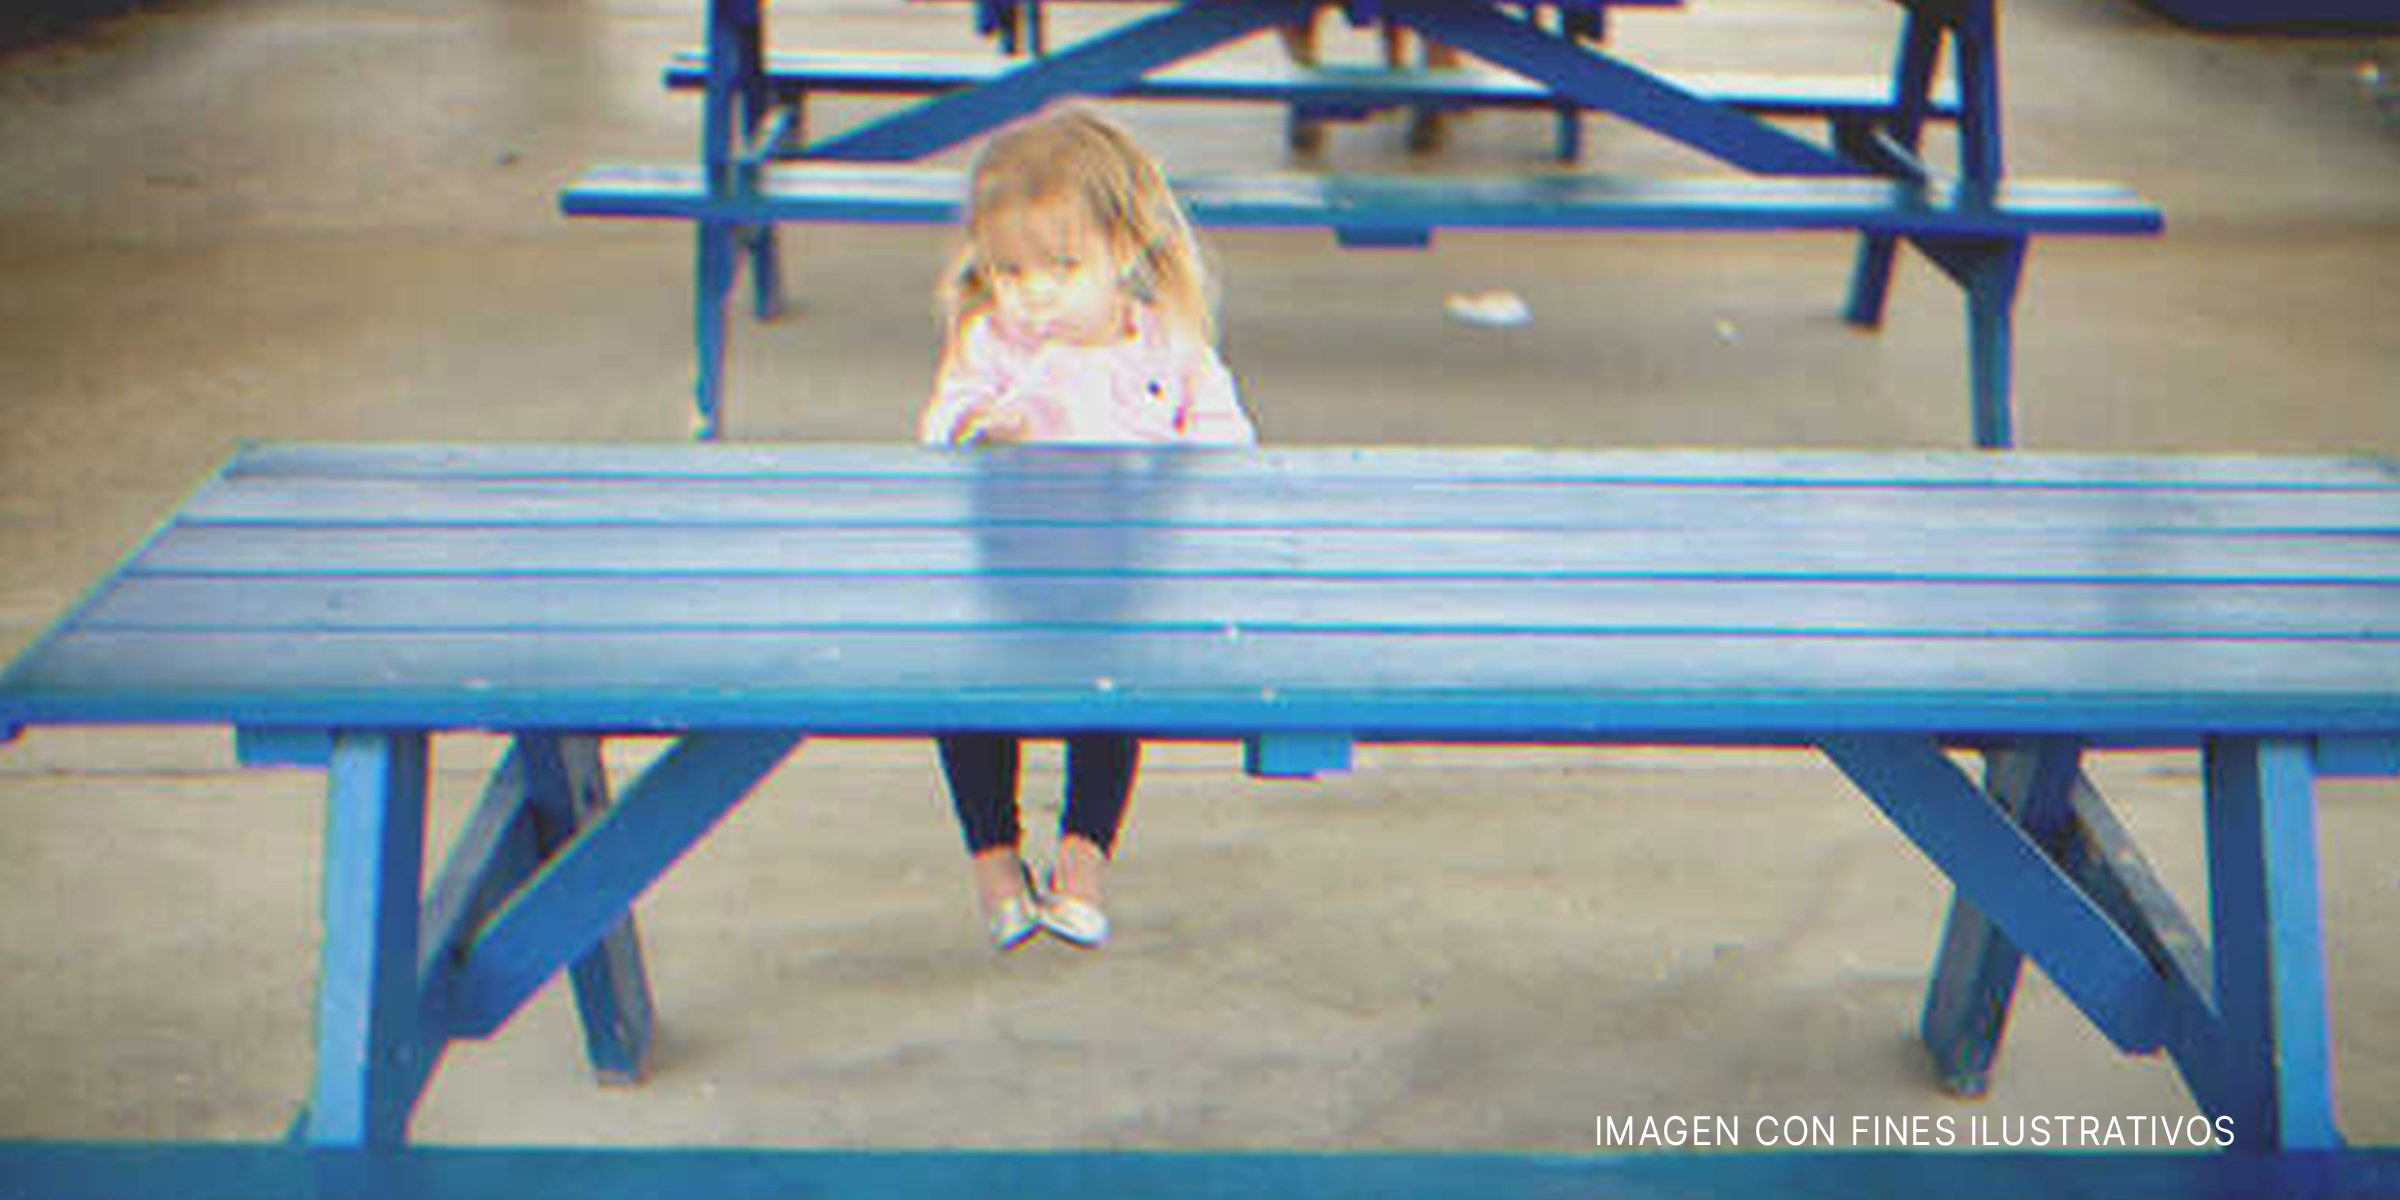 Una niña sentada sola en un banco | Foto: Flickr.com/Donnie Ray Jones (CC BY 2.0)